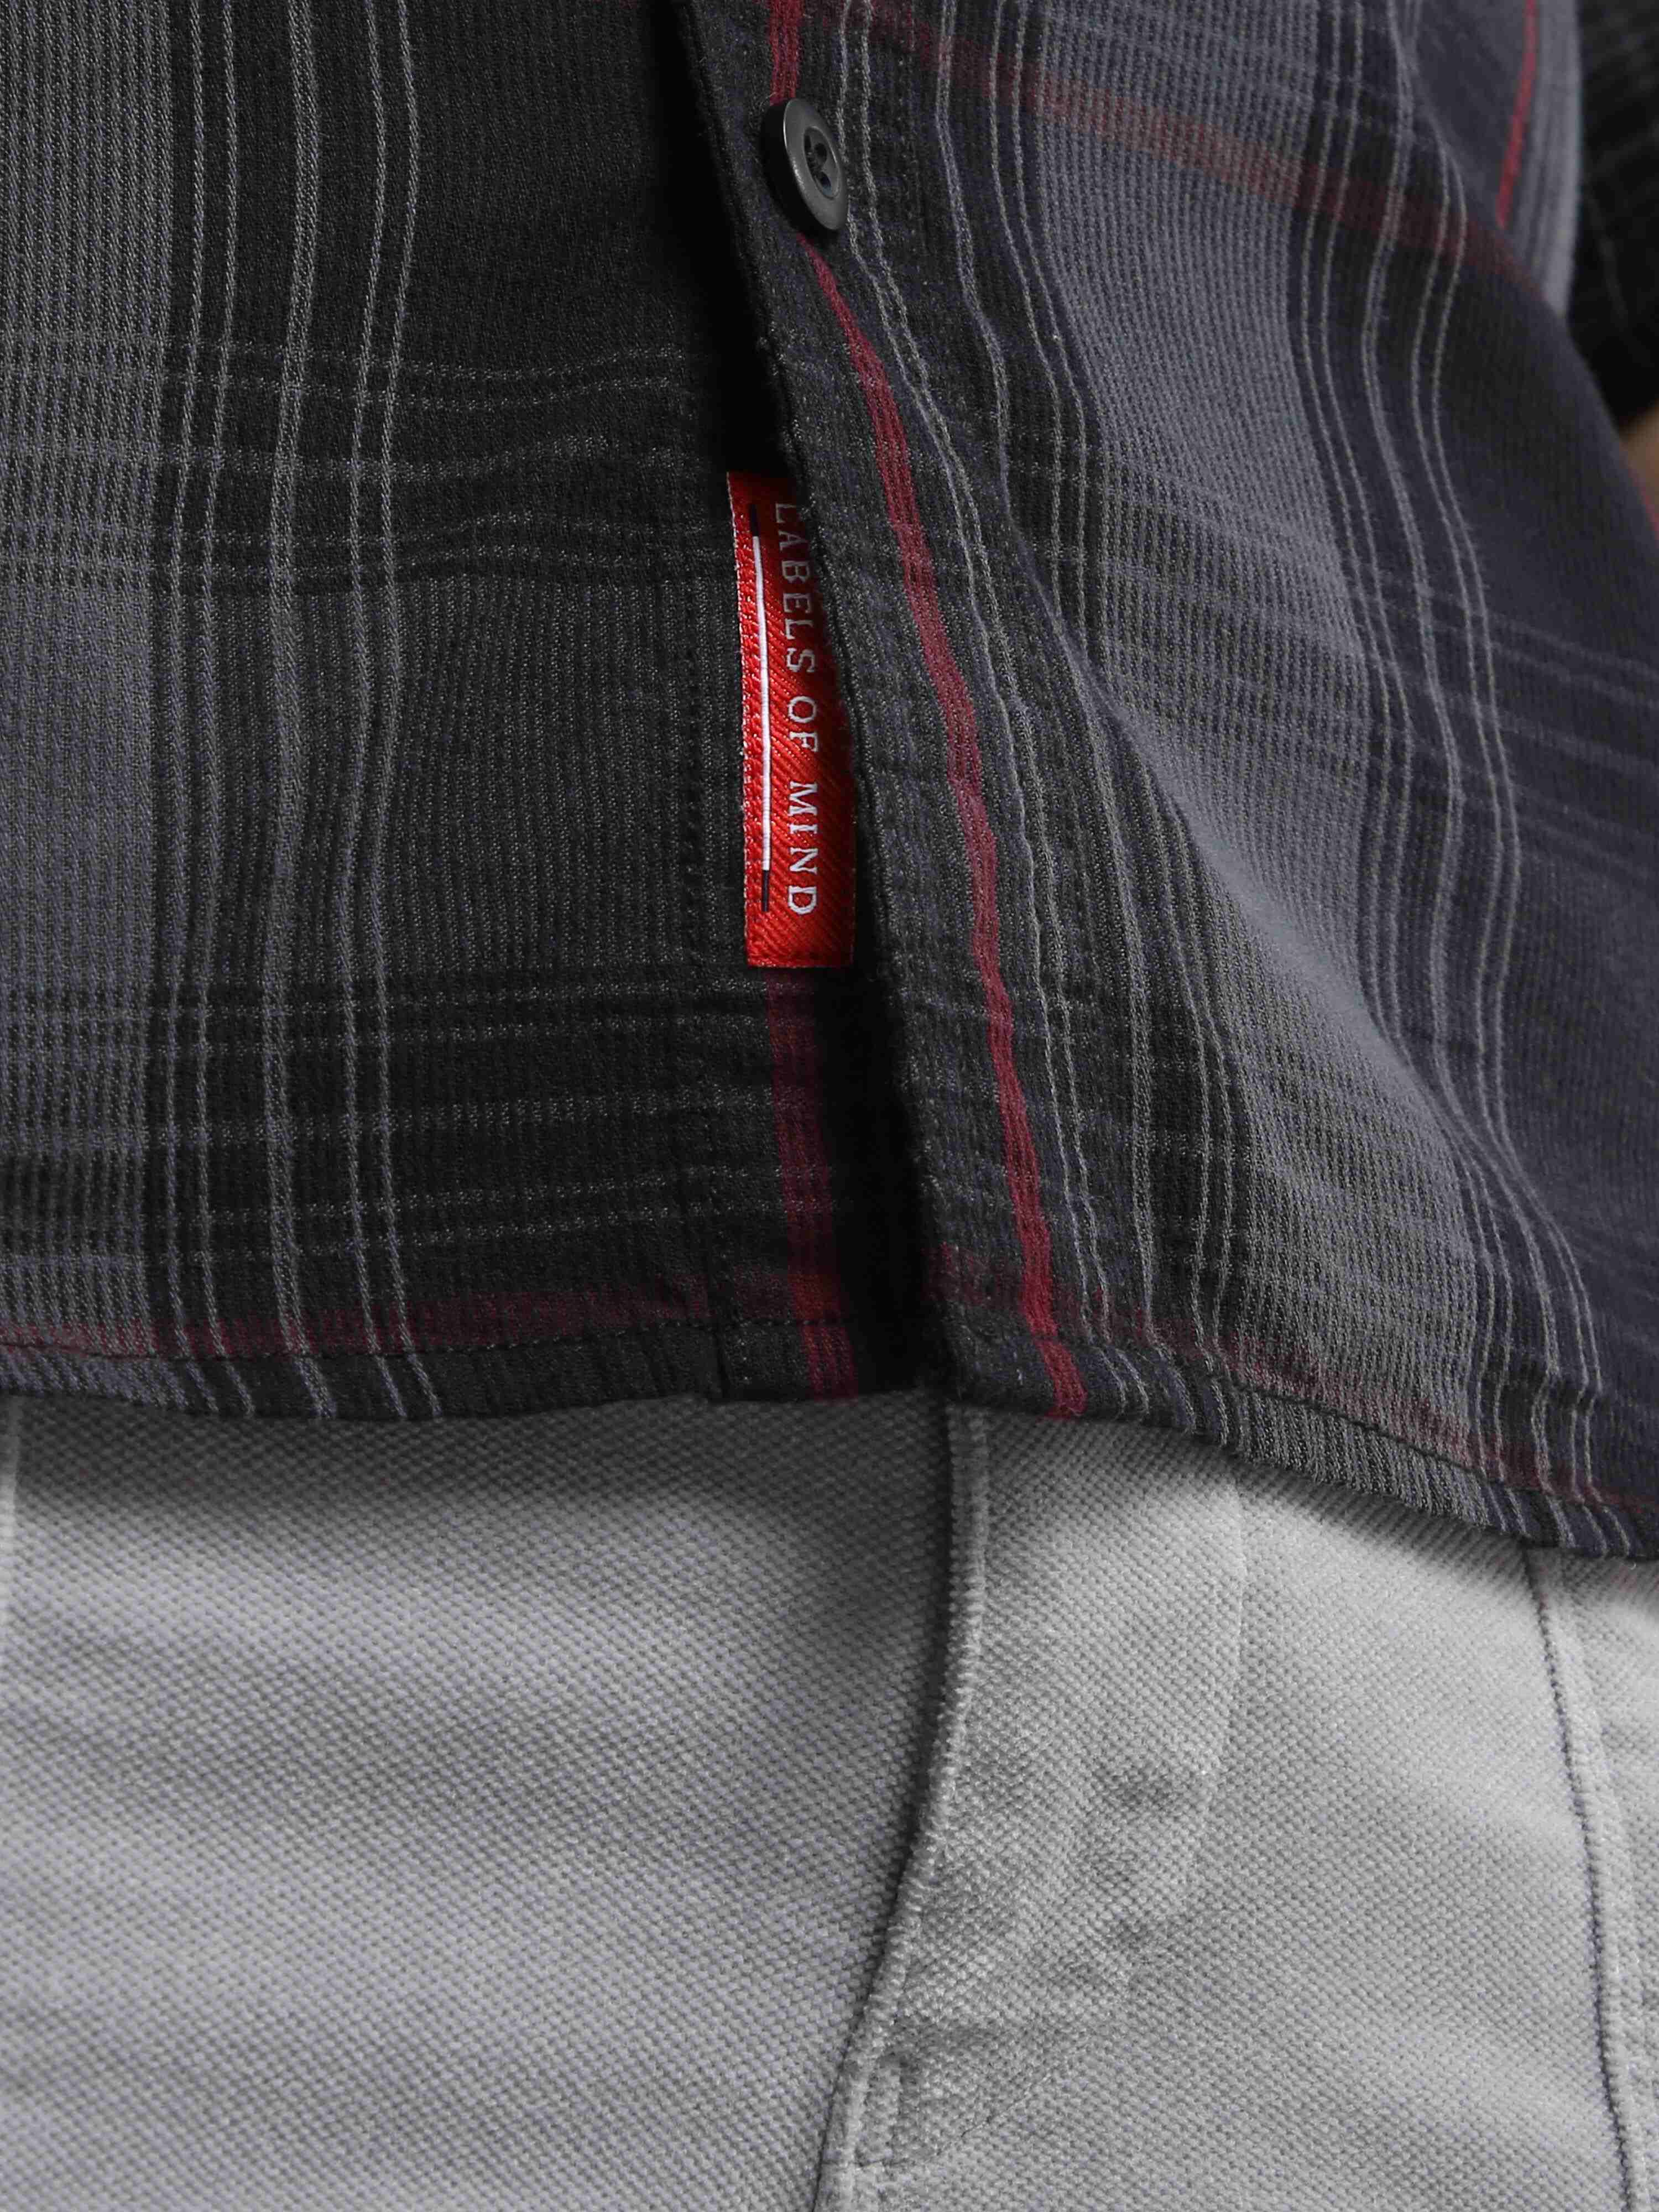 Slate Grey And Black Corduroy Double Pocket Checks Shirt